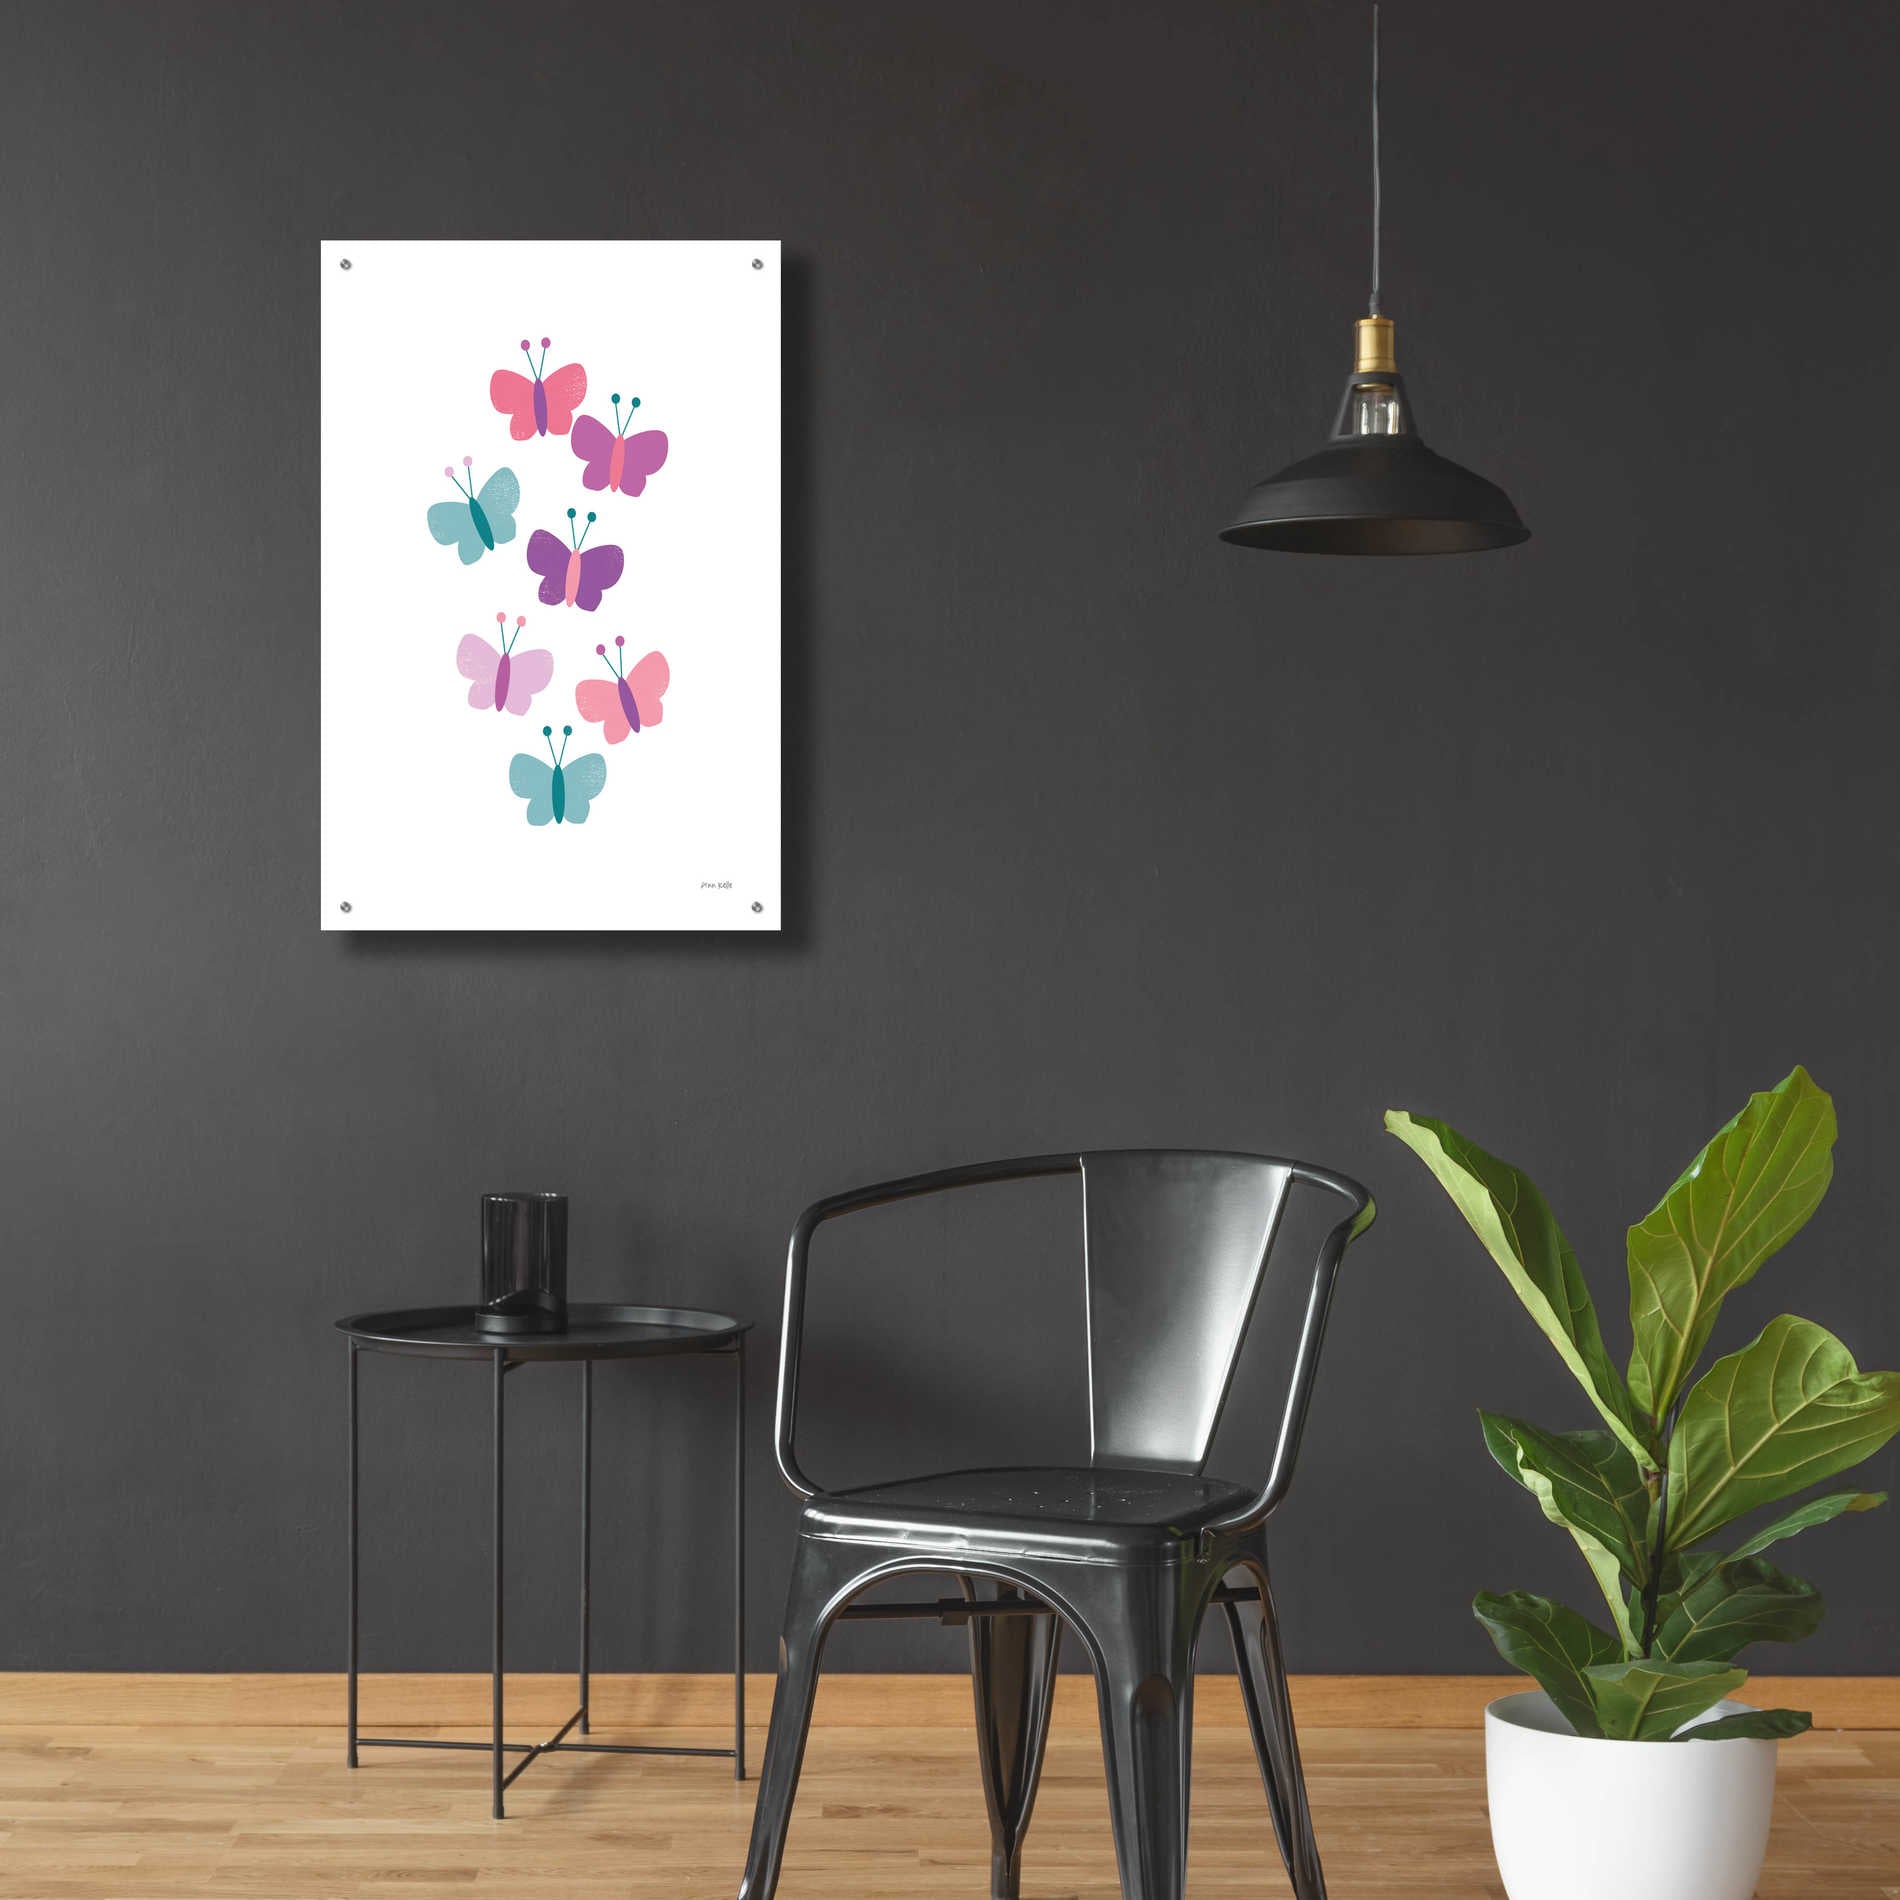 Epic Art 'Butterfly Friends Girly' by Ann Kelle Designs, Acrylic Glass Wall Art,24x36